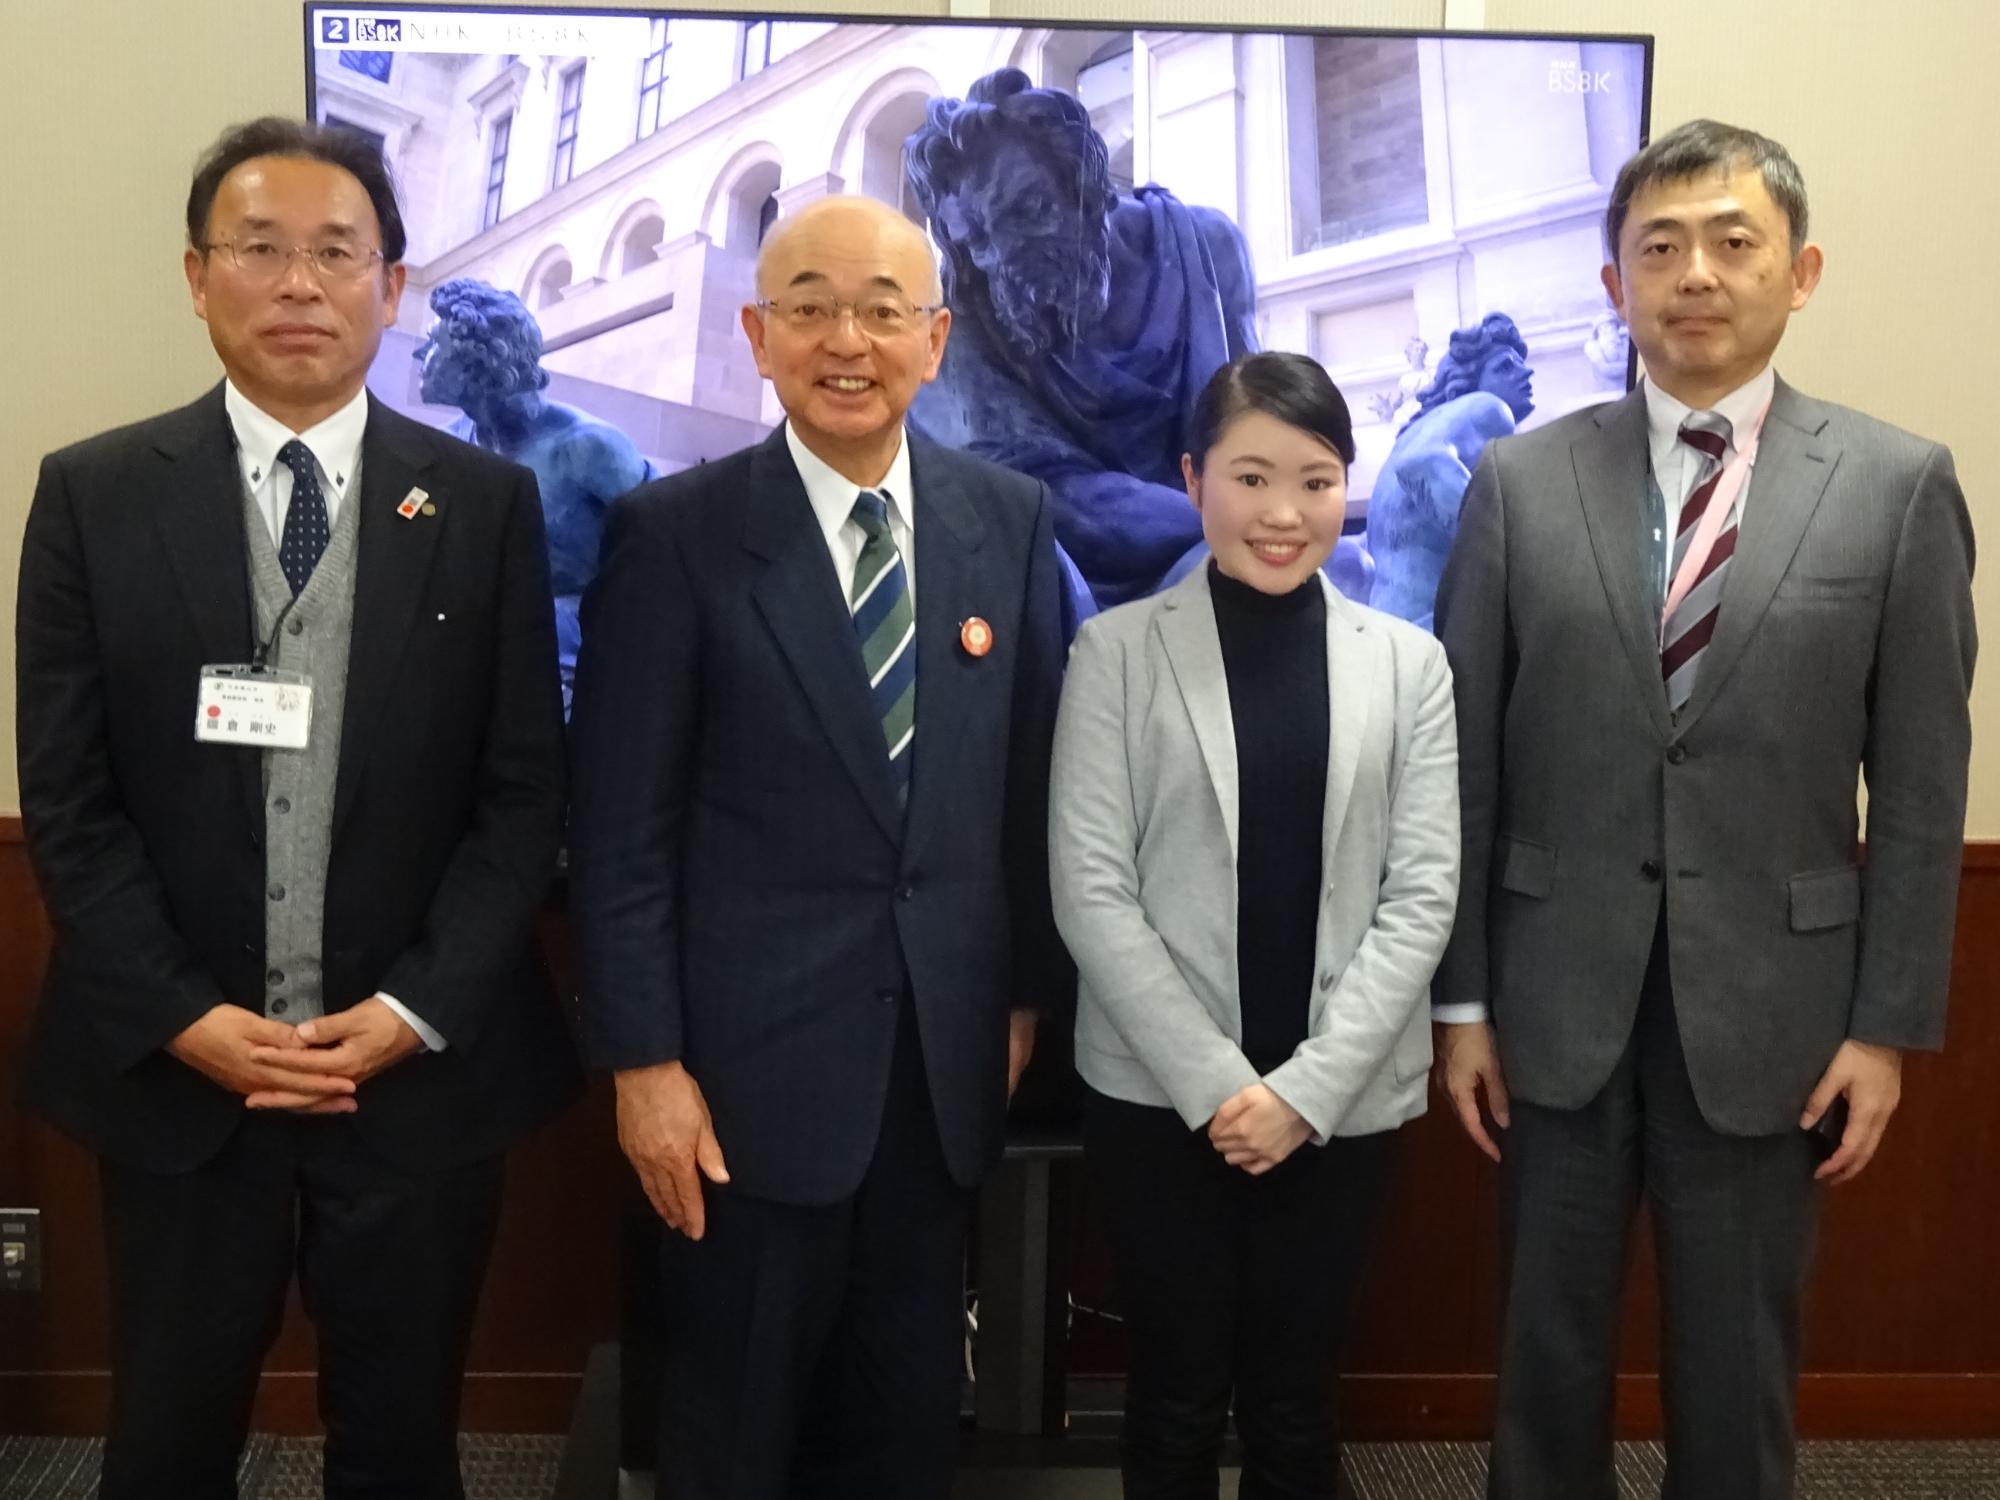 市の職員と市長、伊藤NHK神戸放送局長さんが横一列に並んでいる写真